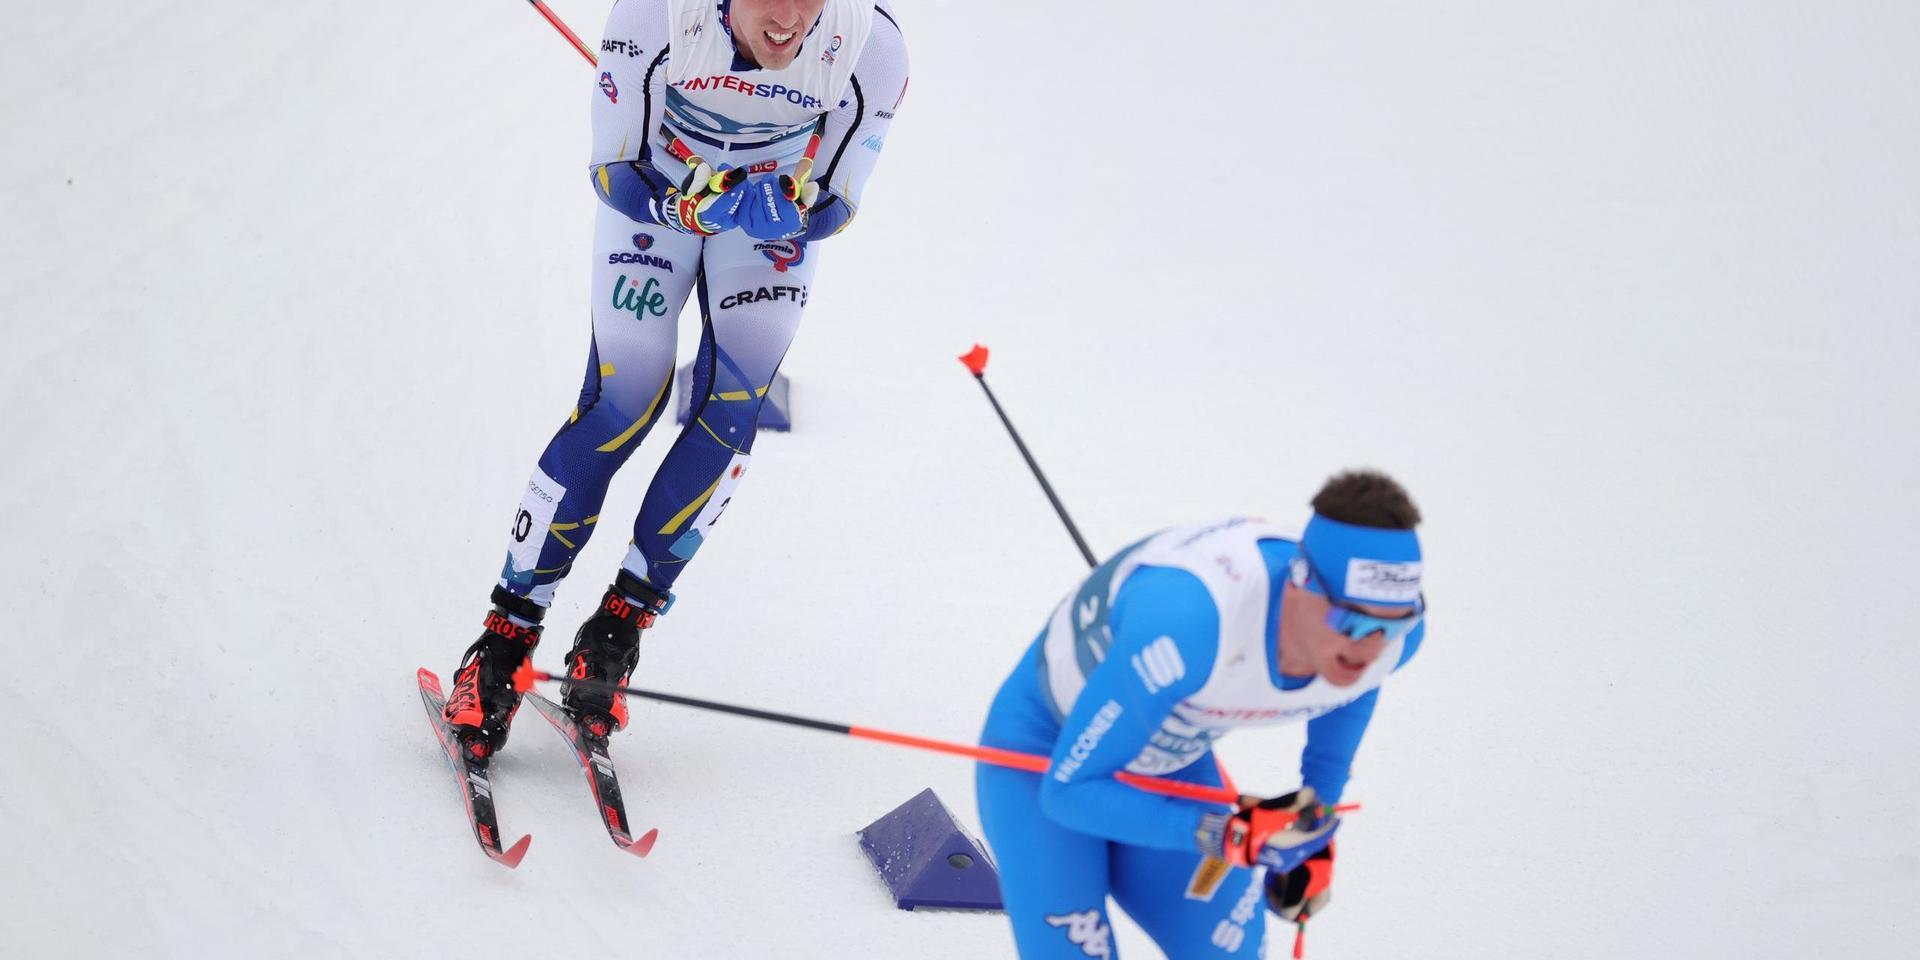 Calle Halfvarsson bröt skiathlonloppet i VM och funderar på att avsluta säsongen.